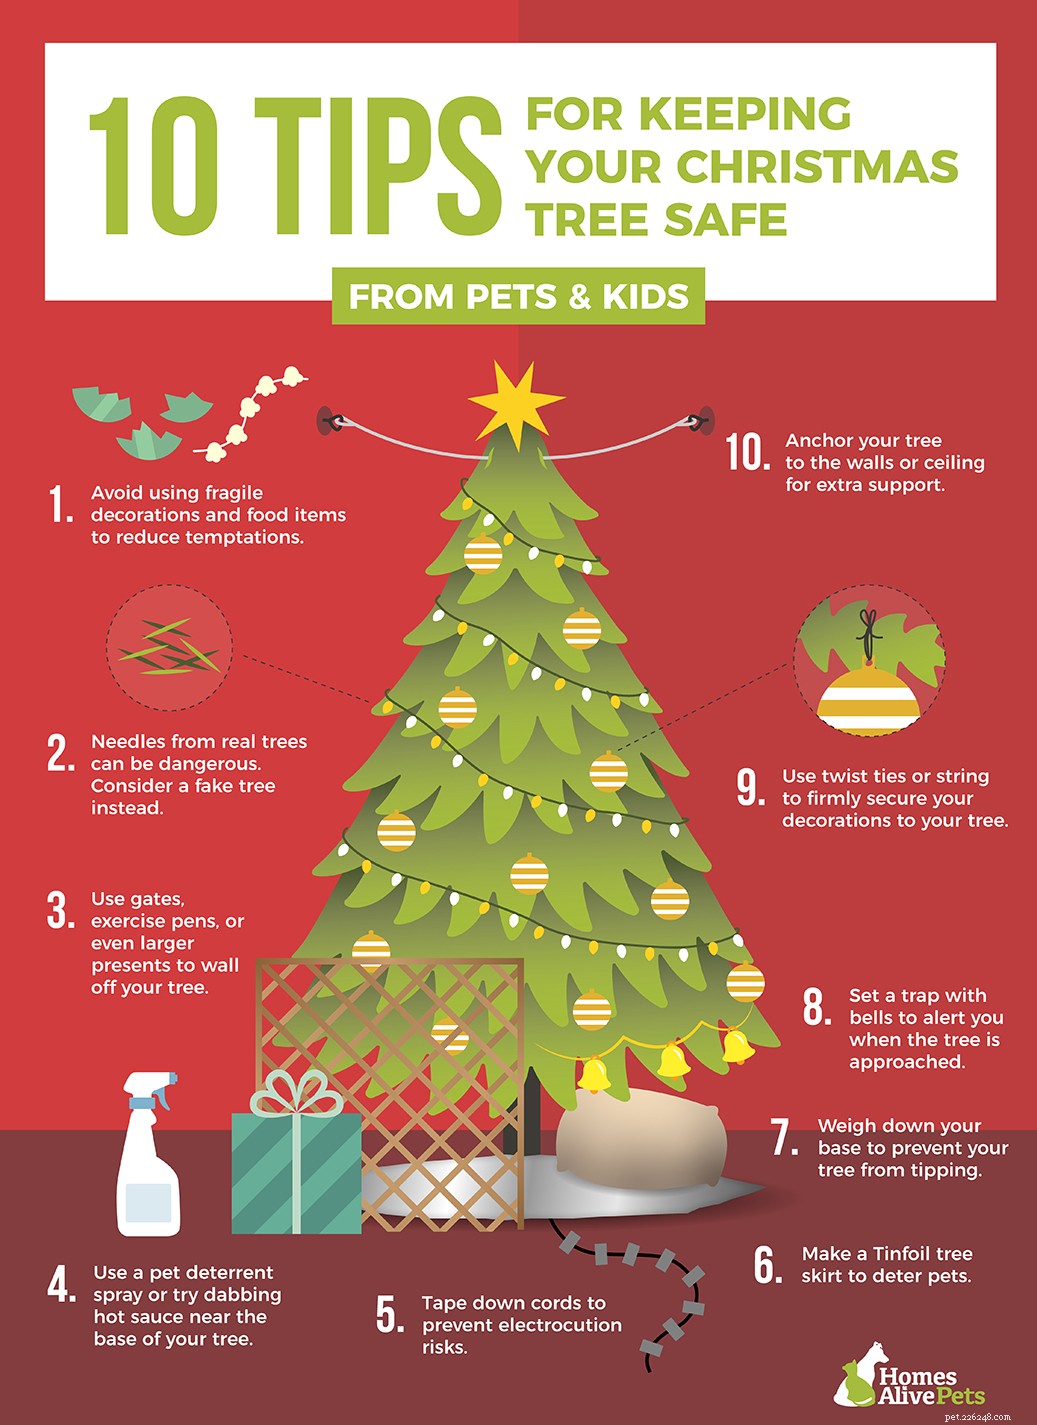 あなたの犬をあなたのクリスマスツリーから遠ざけるための10の秘訣 